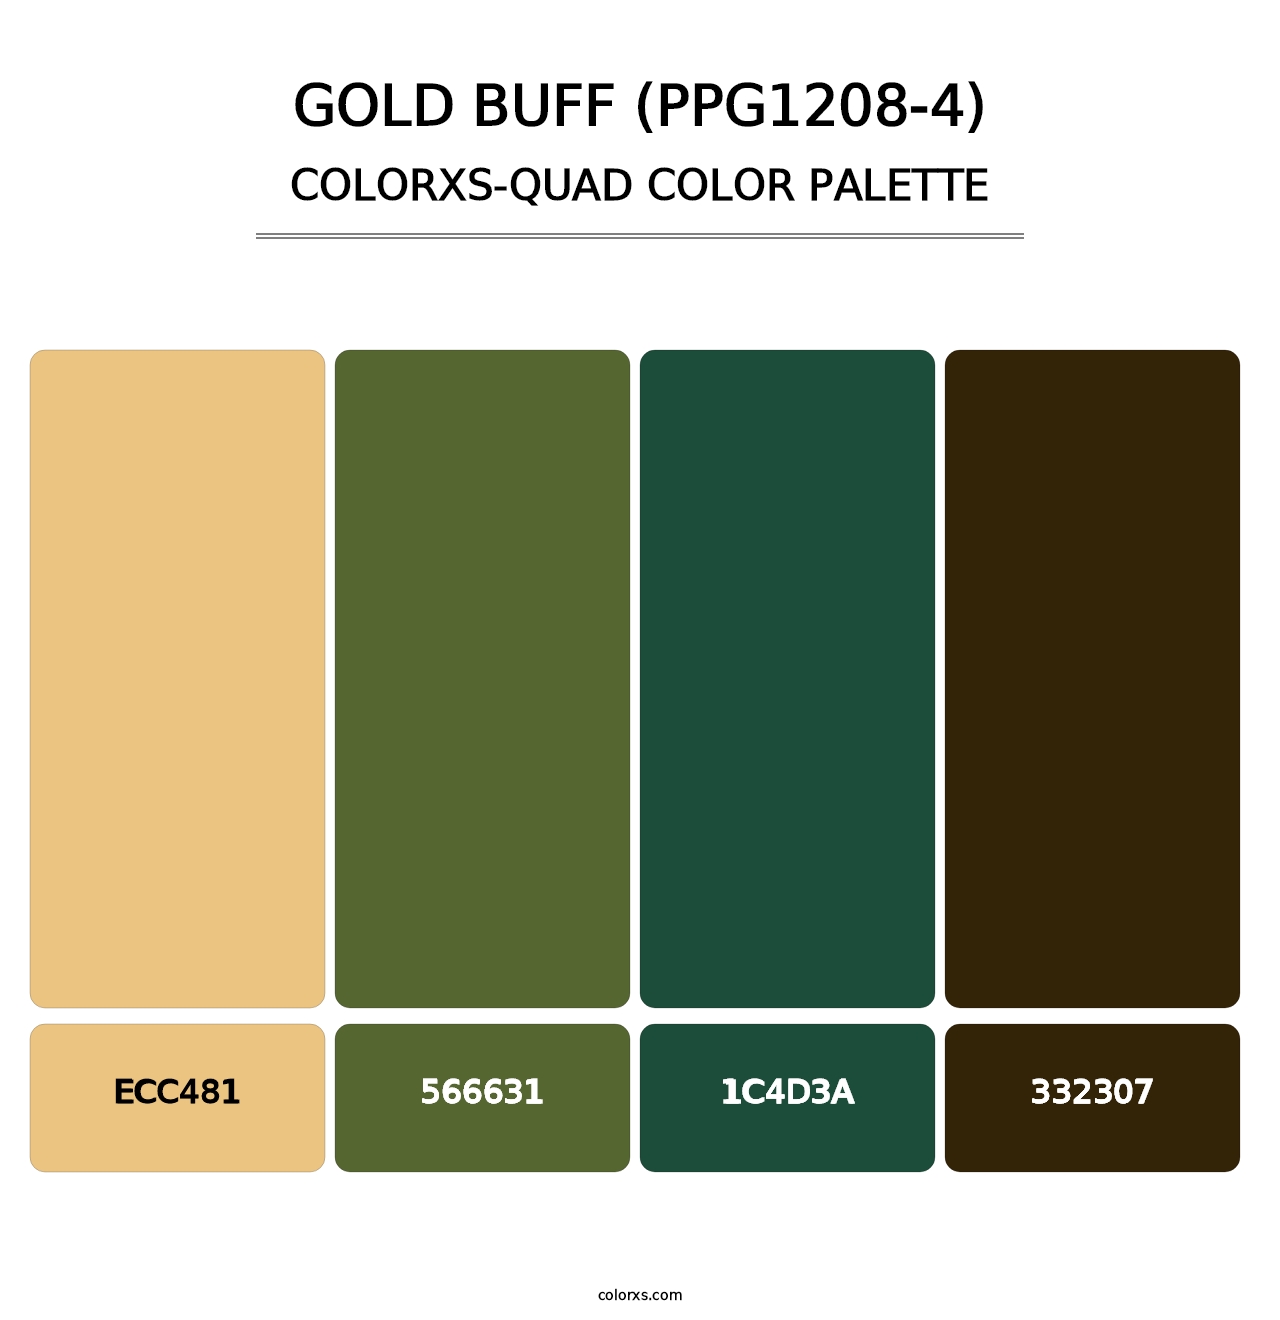 Gold Buff (PPG1208-4) - Colorxs Quad Palette